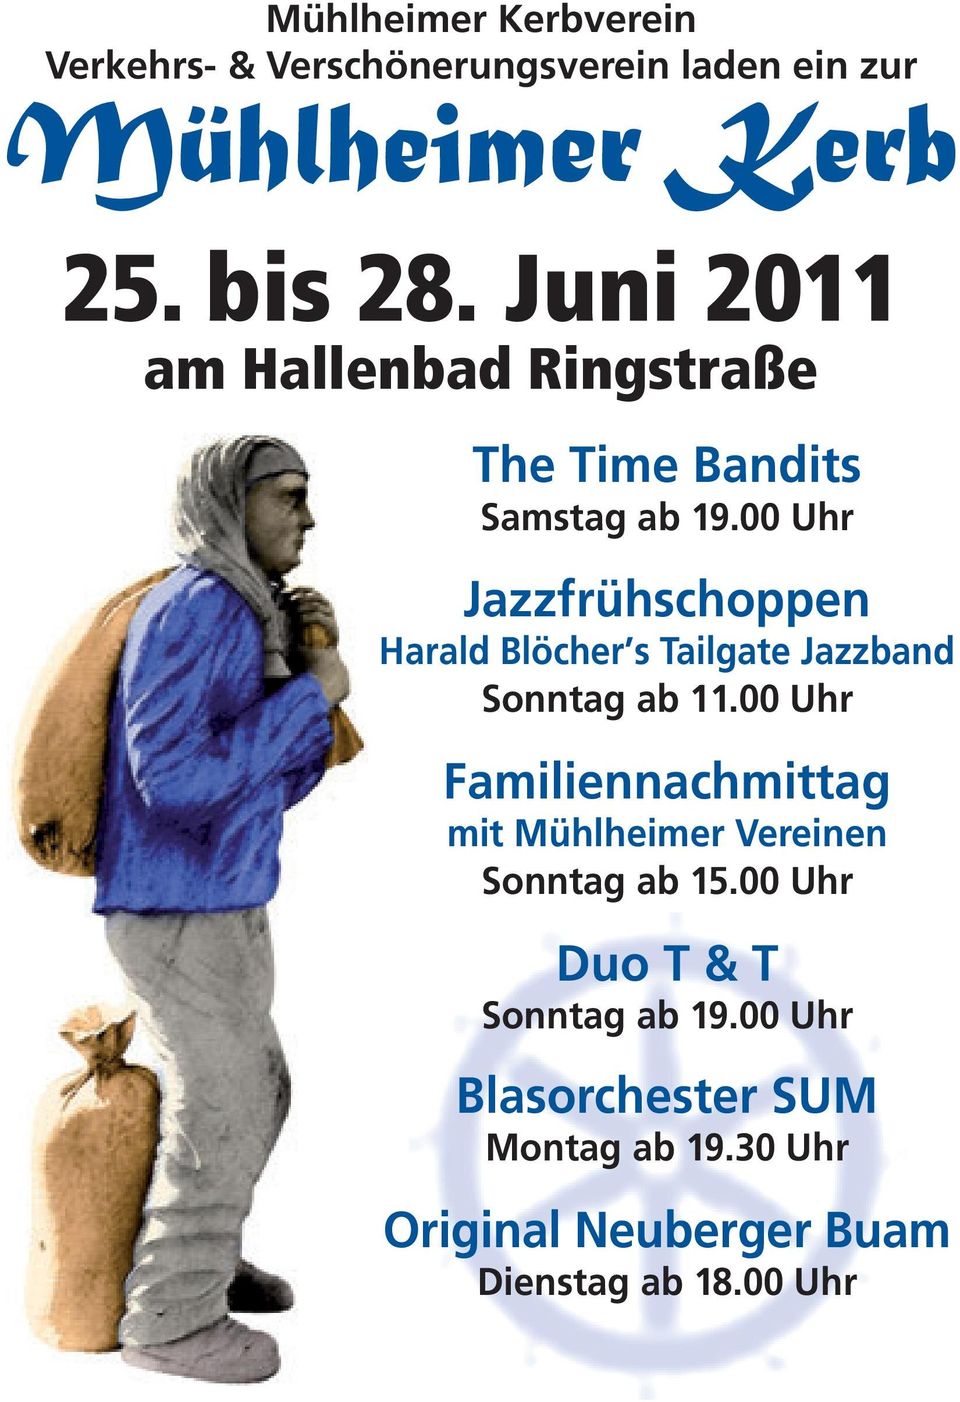 00 Uhr Jazzfrühschoppen Harald Blöcher s Tailgate Jazzband Sonntag ab 11.